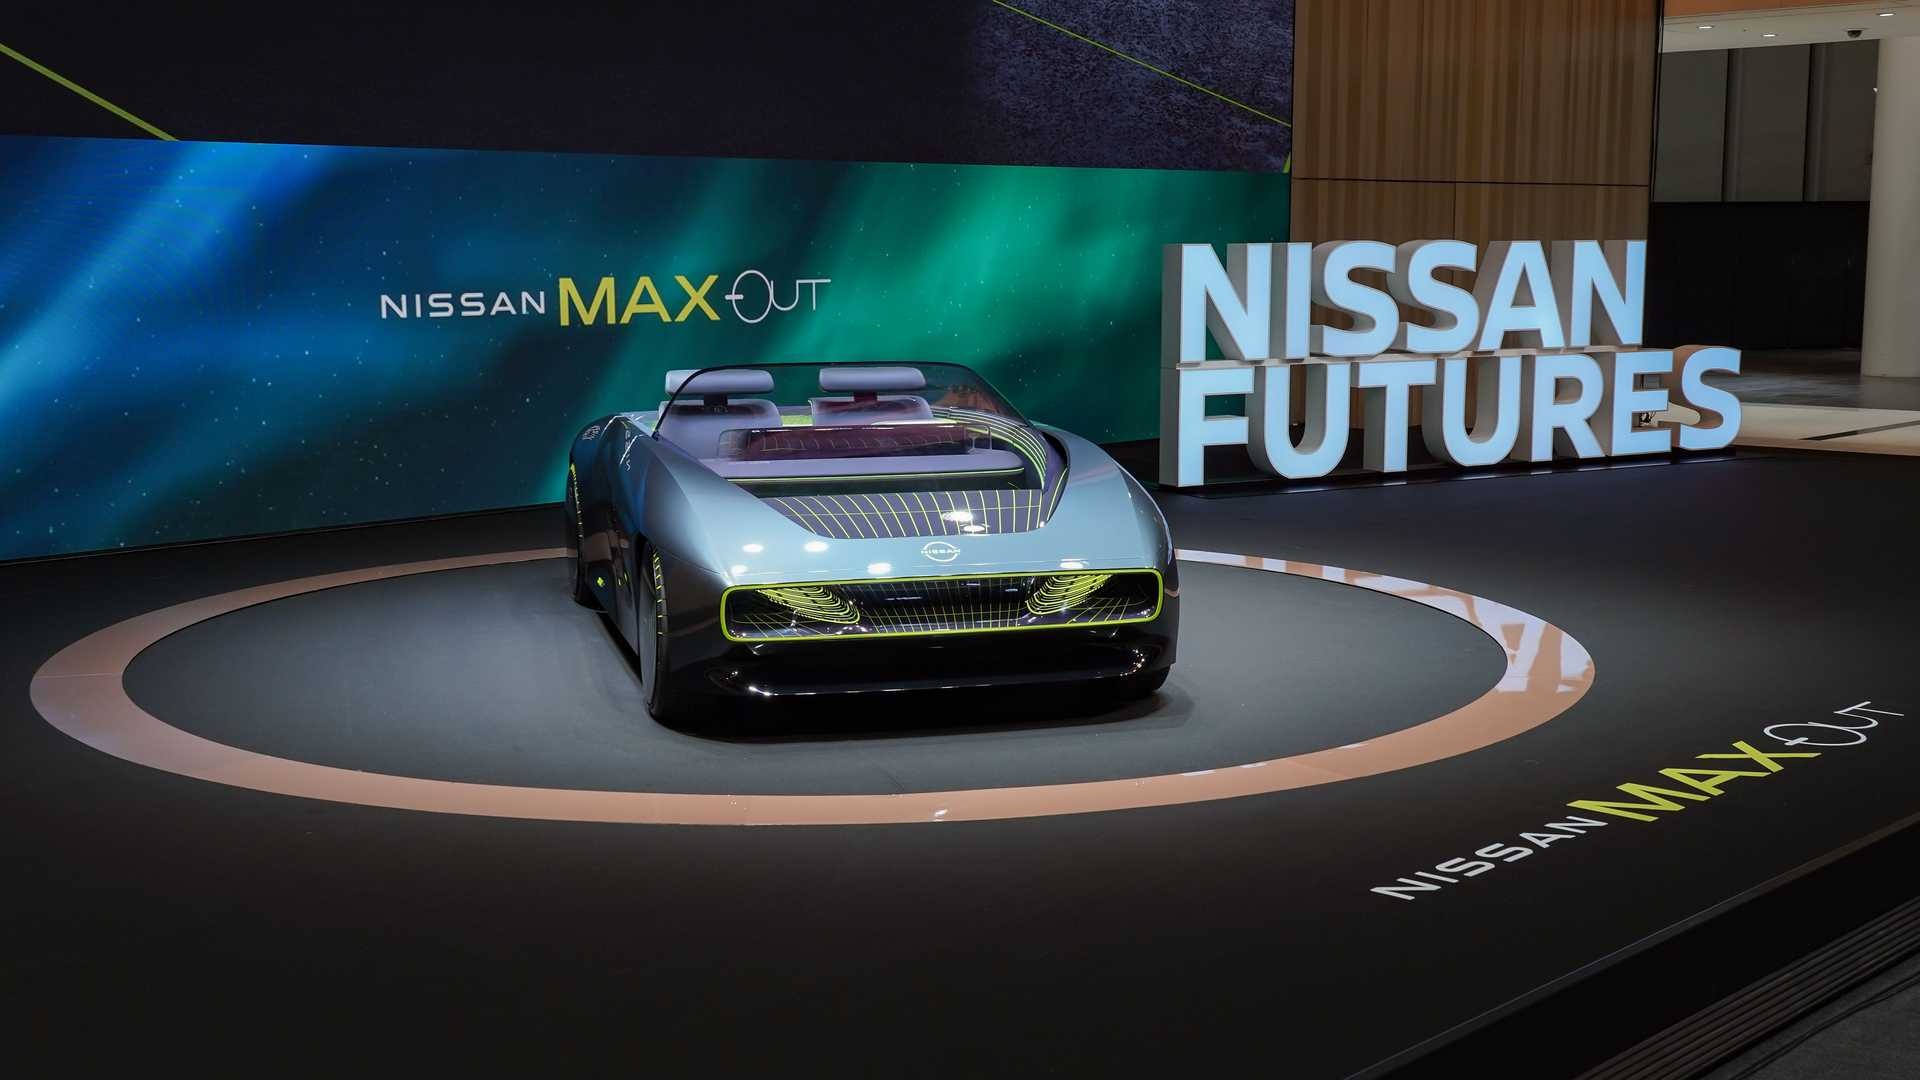 Nissan trình làng mẫu xe điện mui trần Max-Out